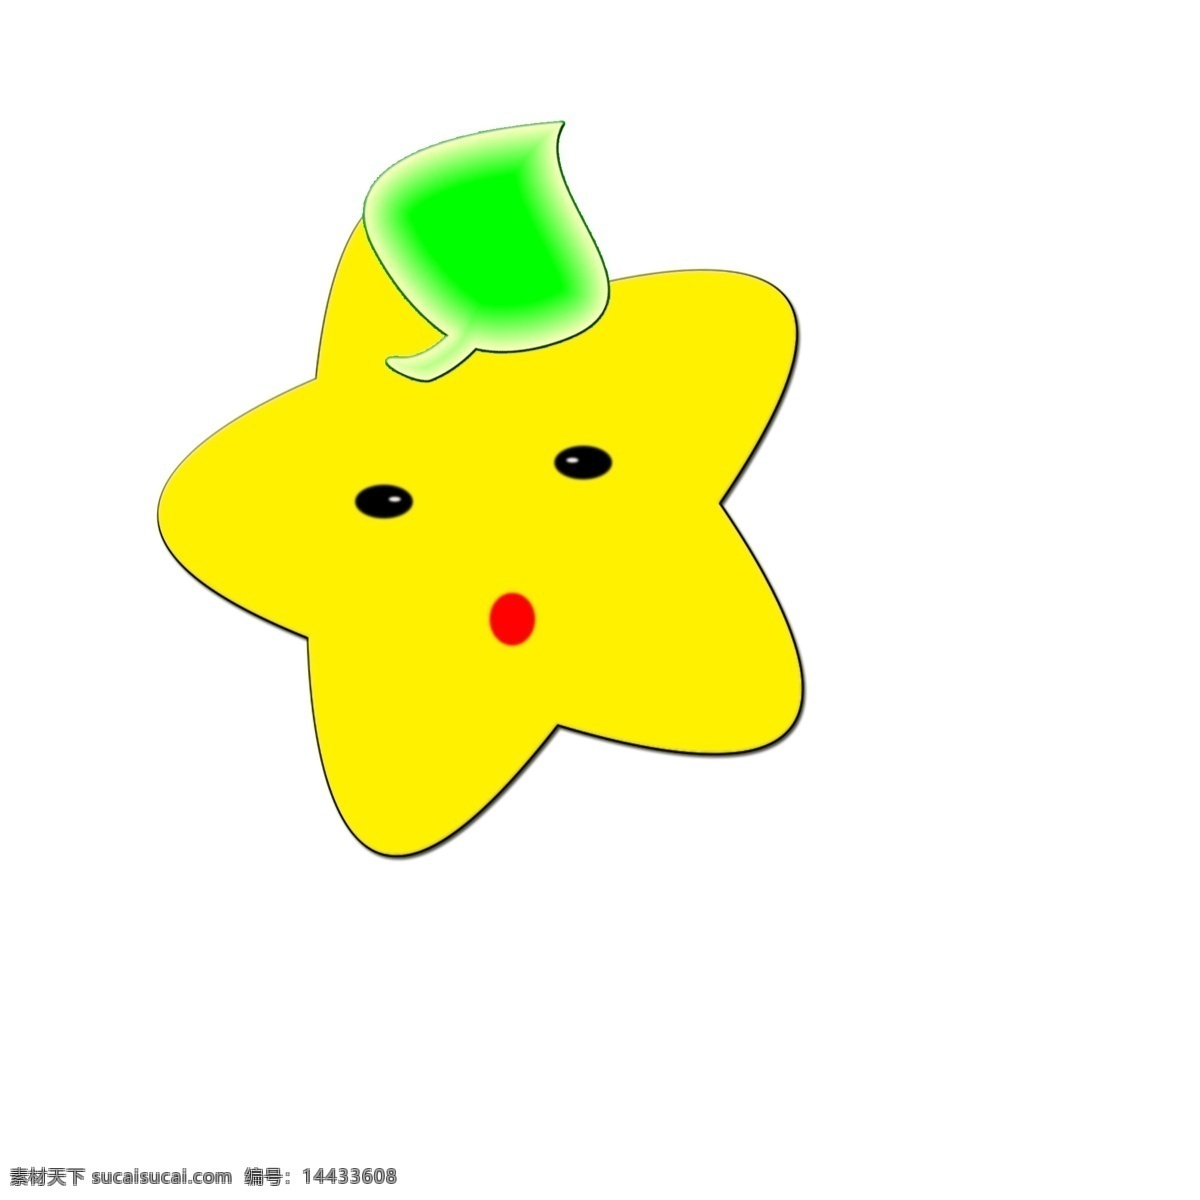 可爱 卡 通风 小星星 可爱的 卡通小星星 立体 黄色的 星星 戴帽子 装饰品 节日 挂饰 快乐